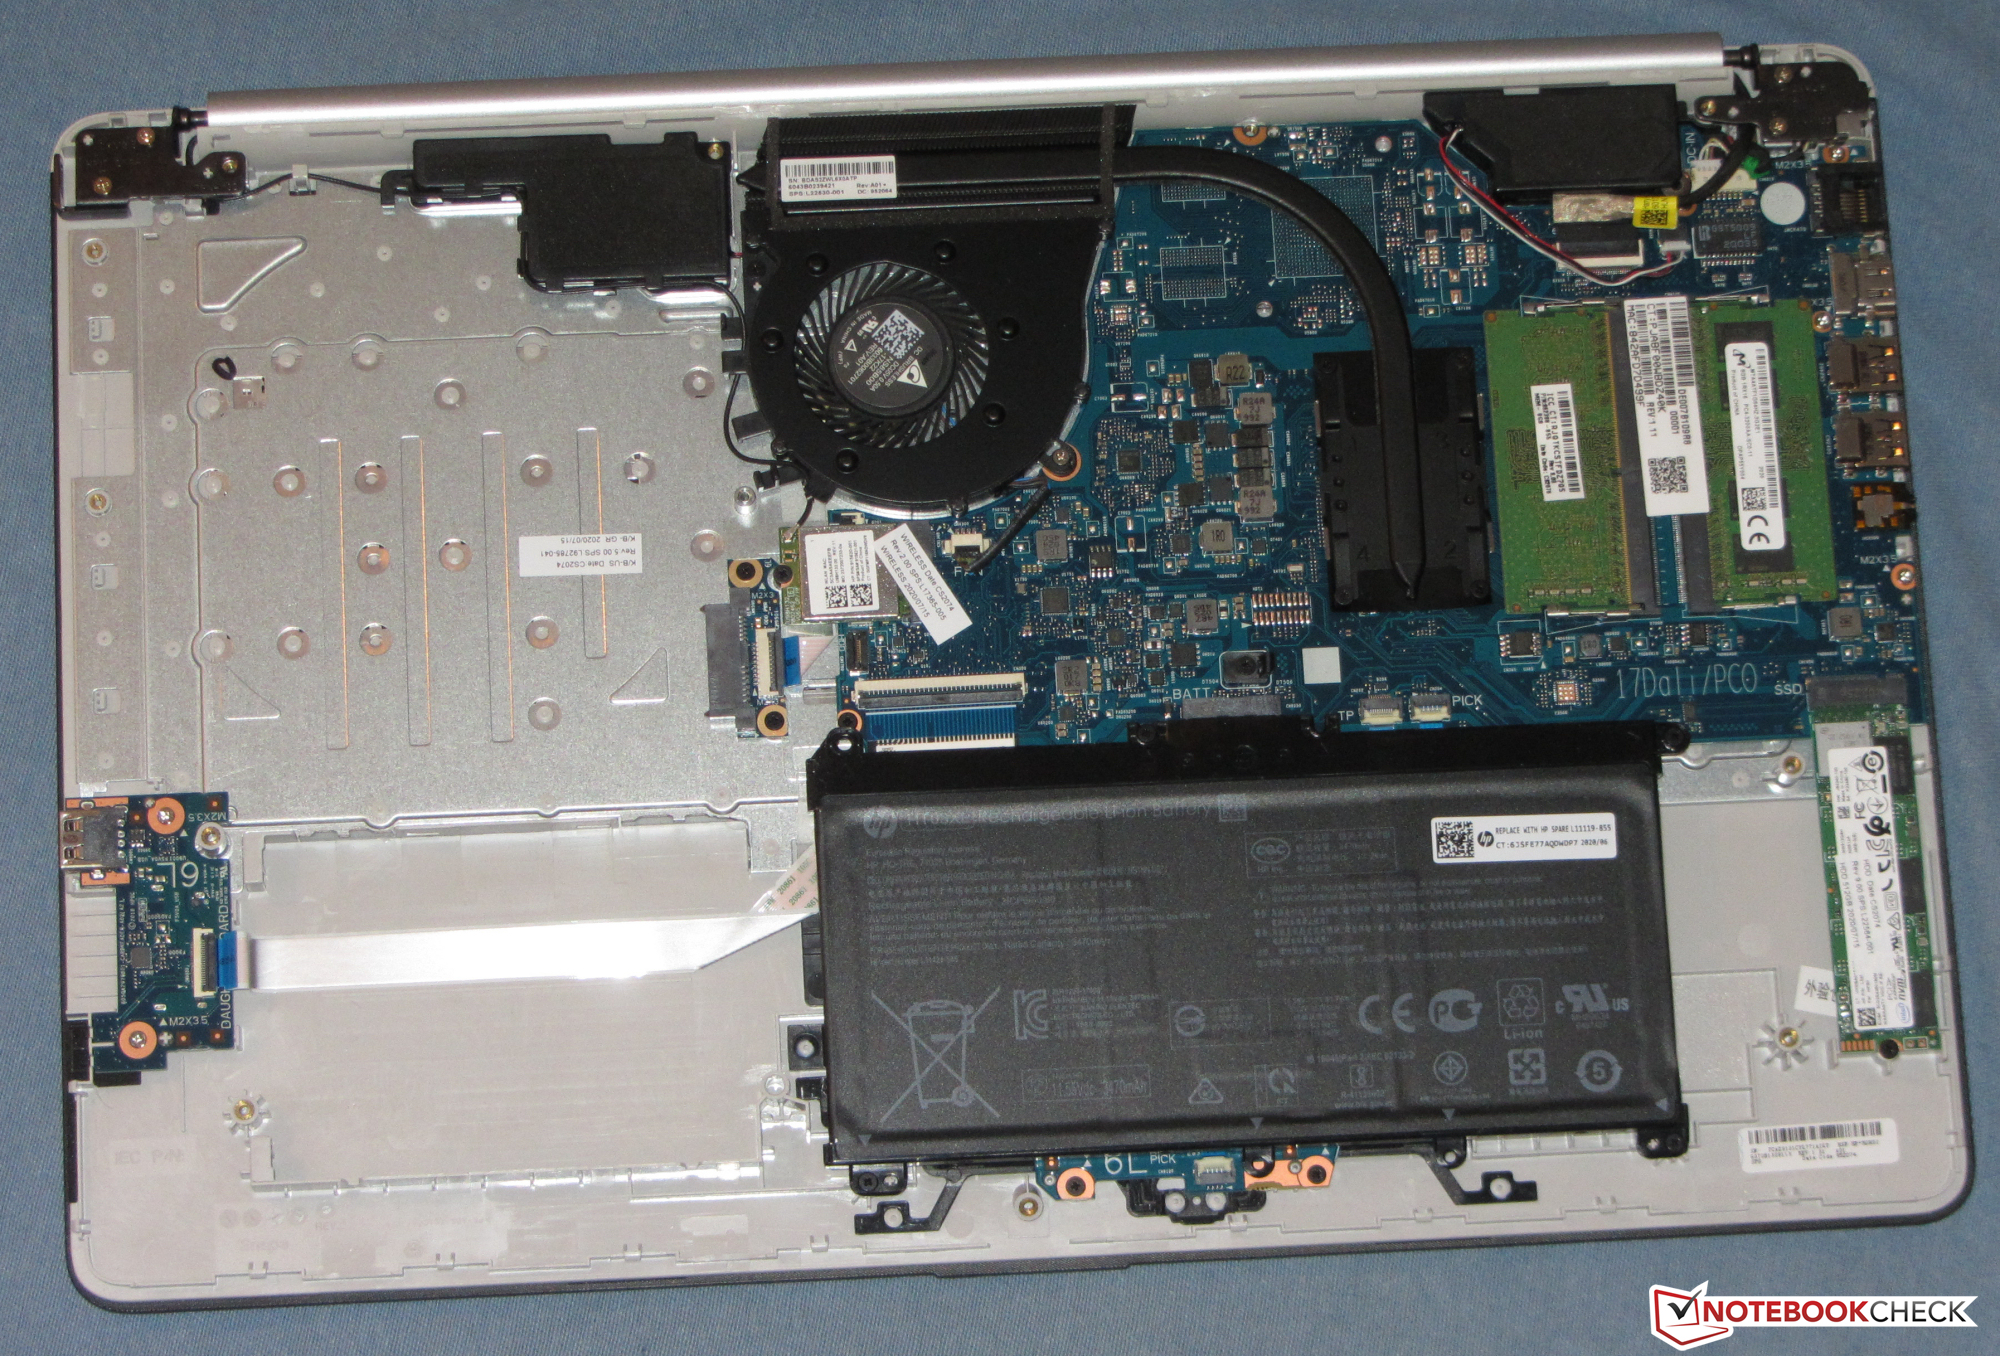 Review de la laptop HP 17: Un simple portátil de oficina con una grabadora  de DVD -  Analisis